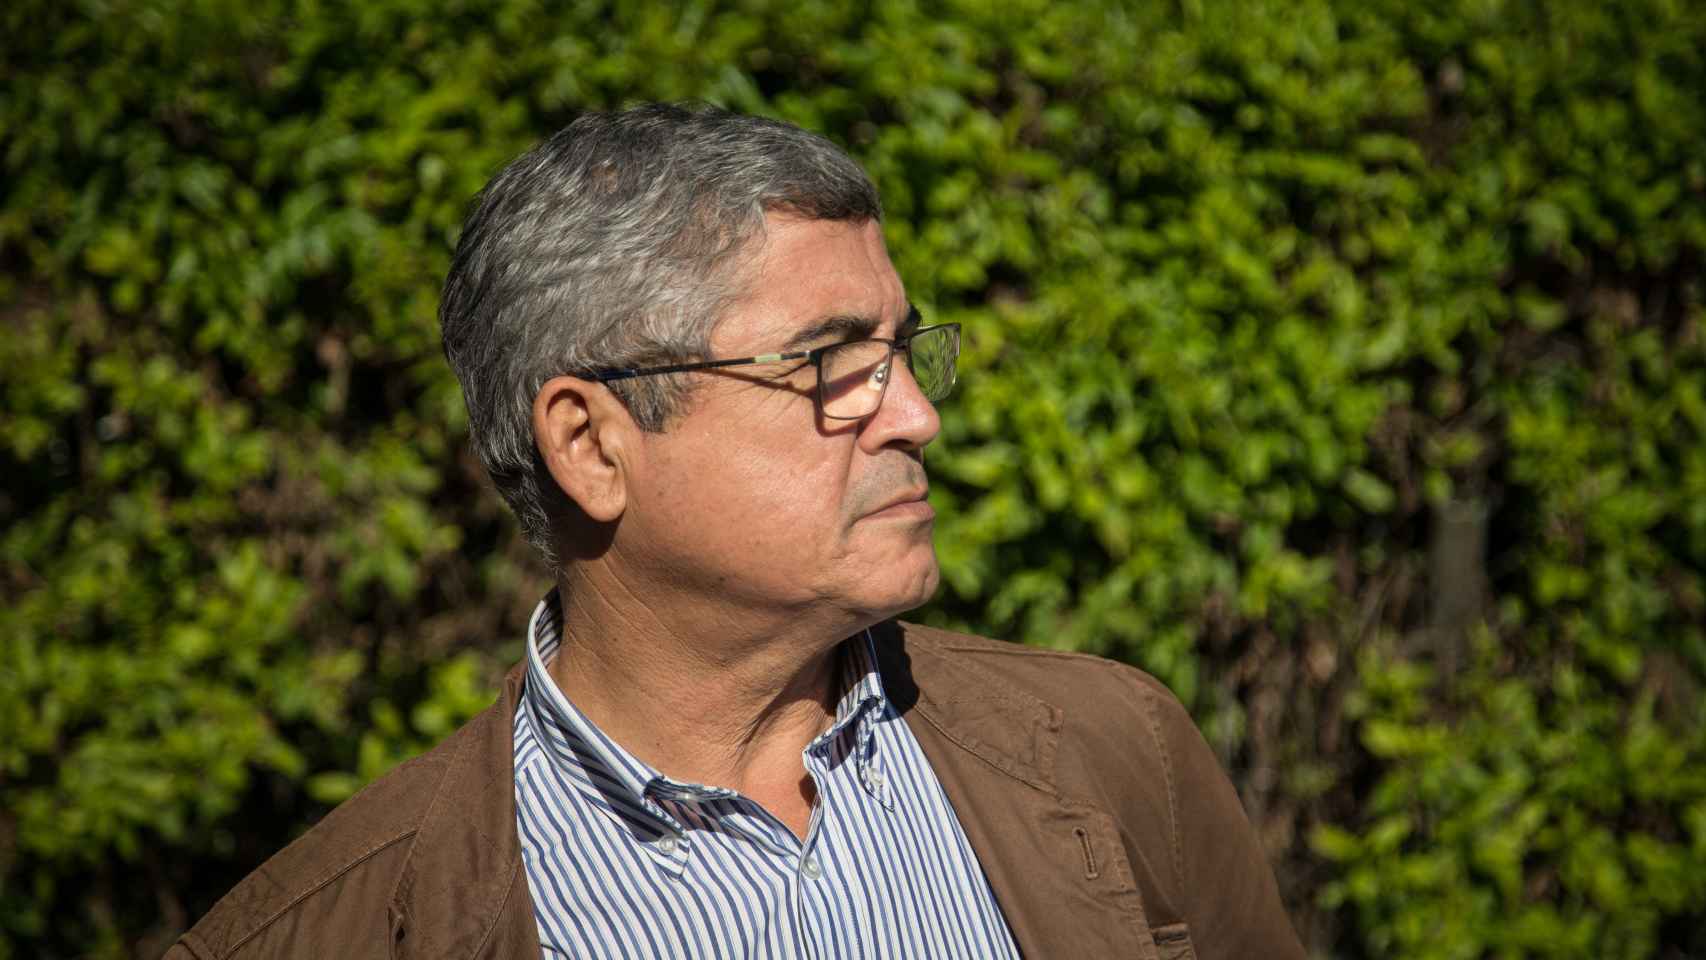 Ignacio Carrasco denunció los hechos ante el Servicio de Asuntos Internos de Guardia Civil a principios del 2009.